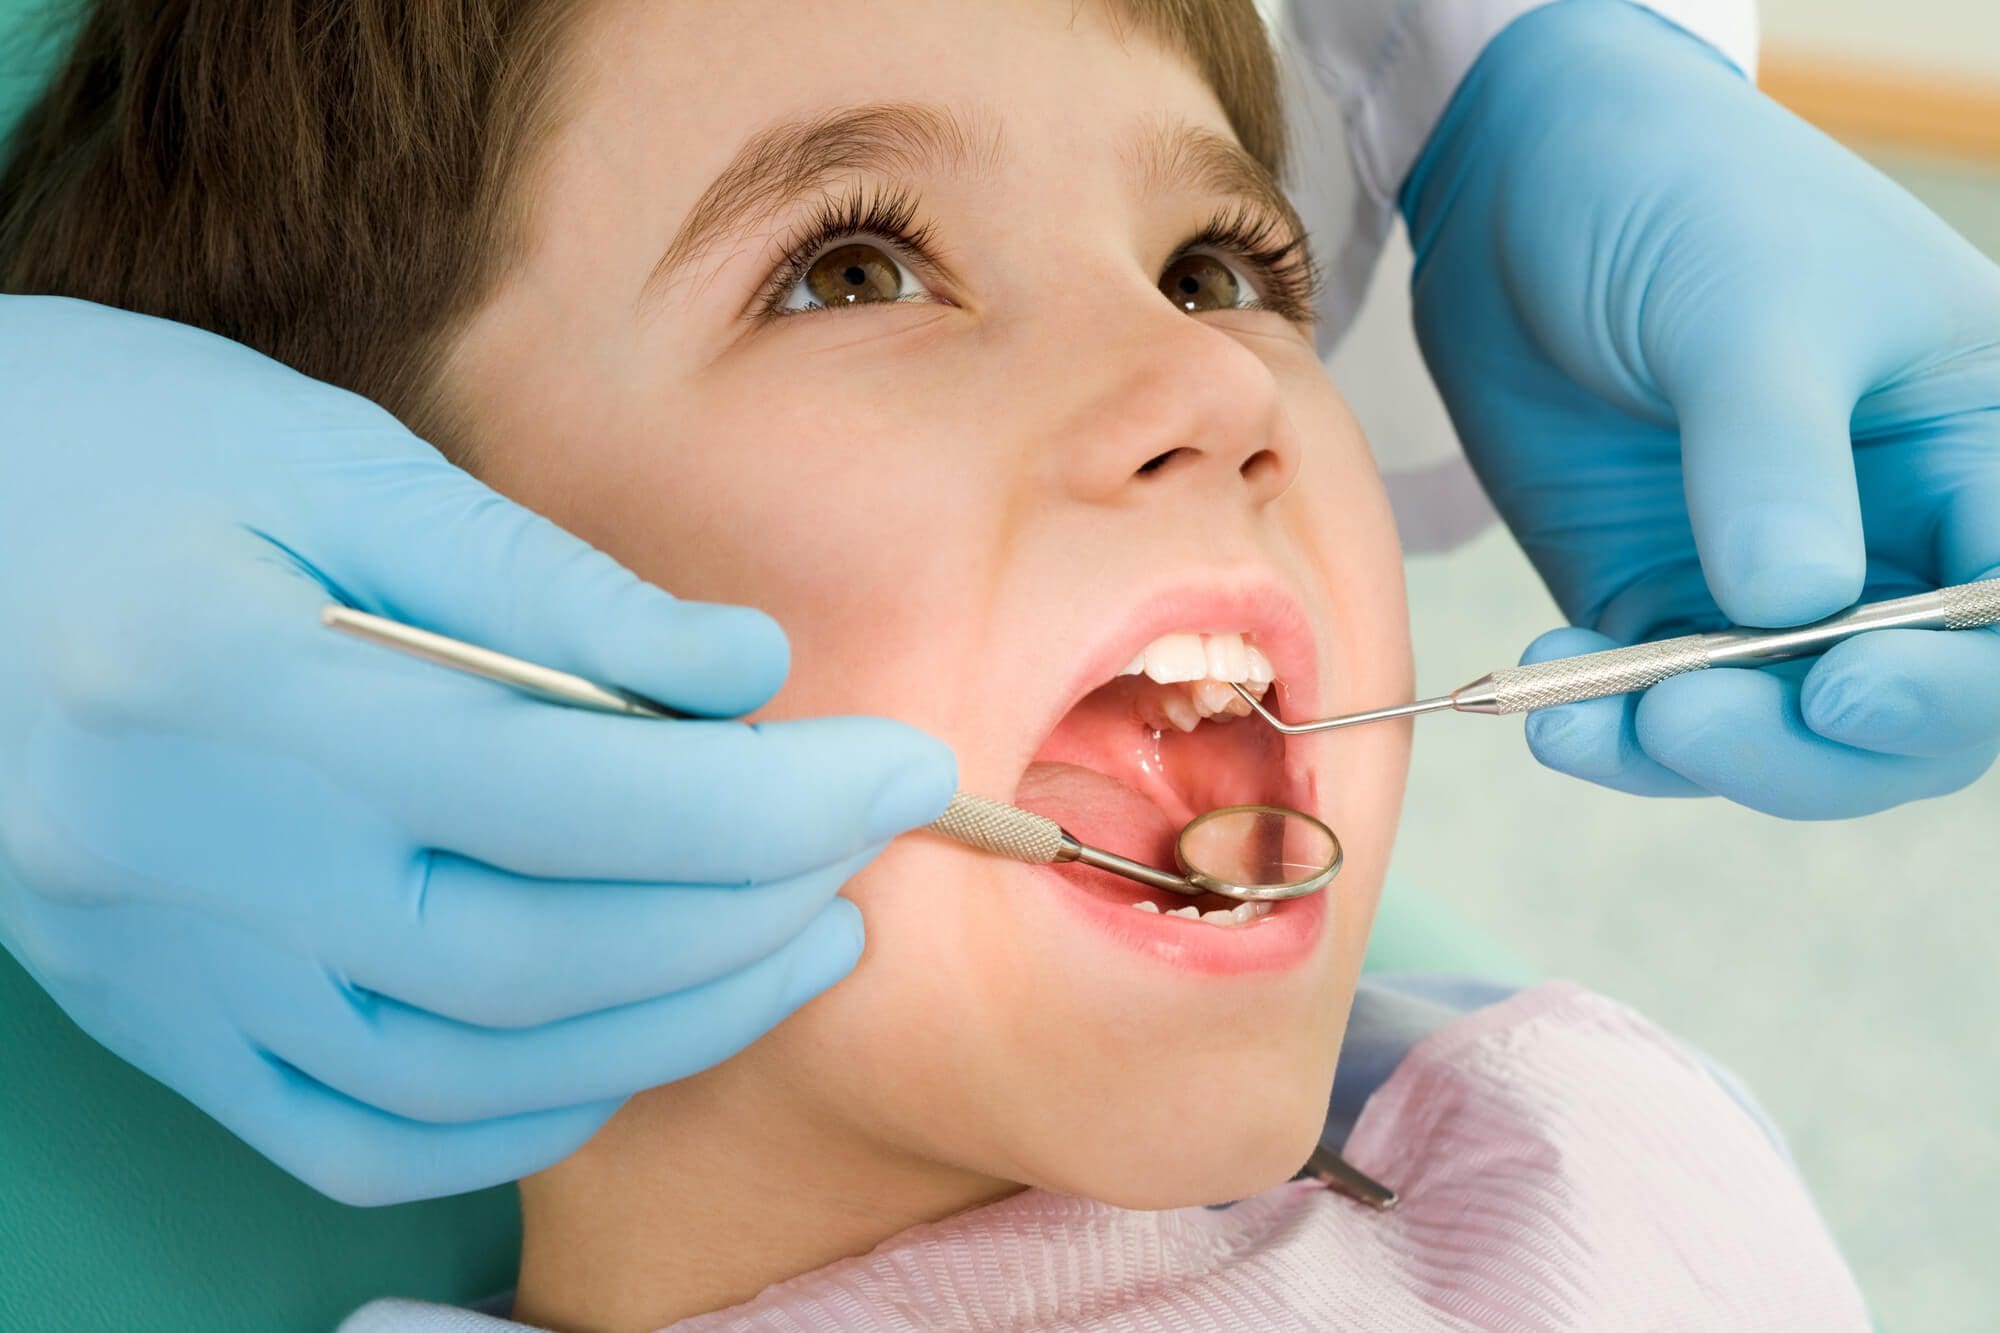 Utilização do cheque dentista diminui nos mais jovens